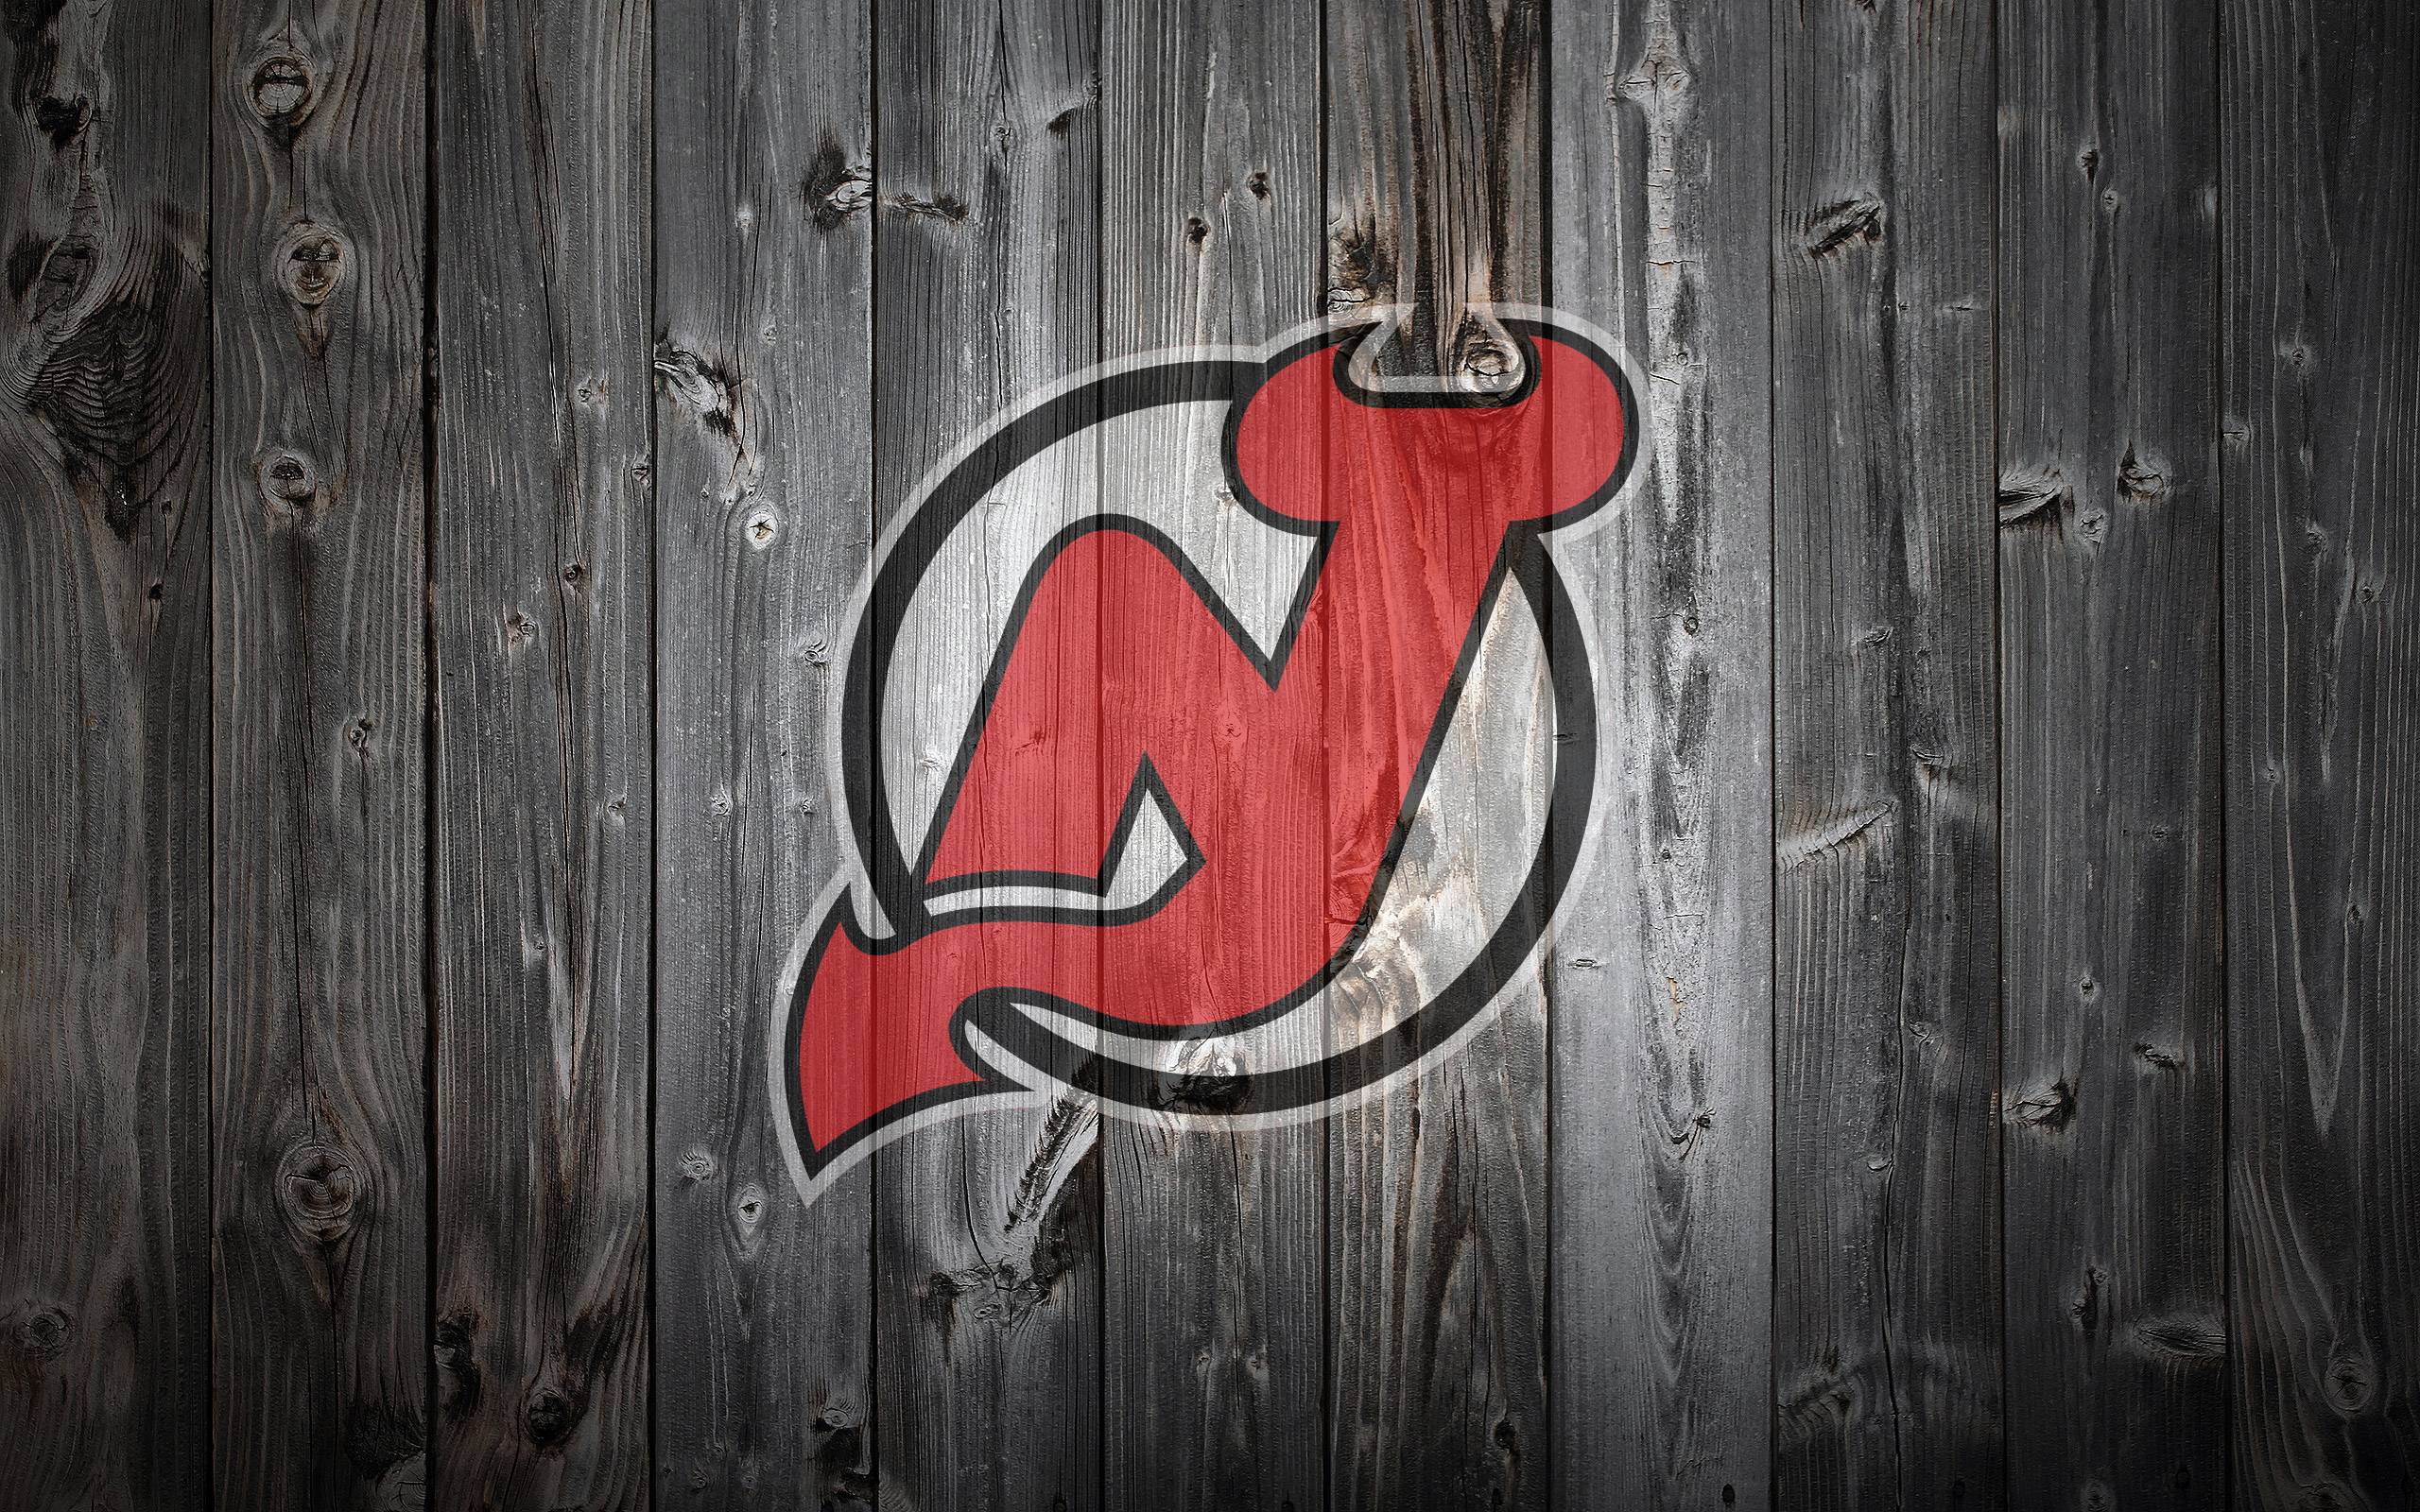 New Jersey Devils Desktop, Phone Wallpapers, & Graphics on Behance